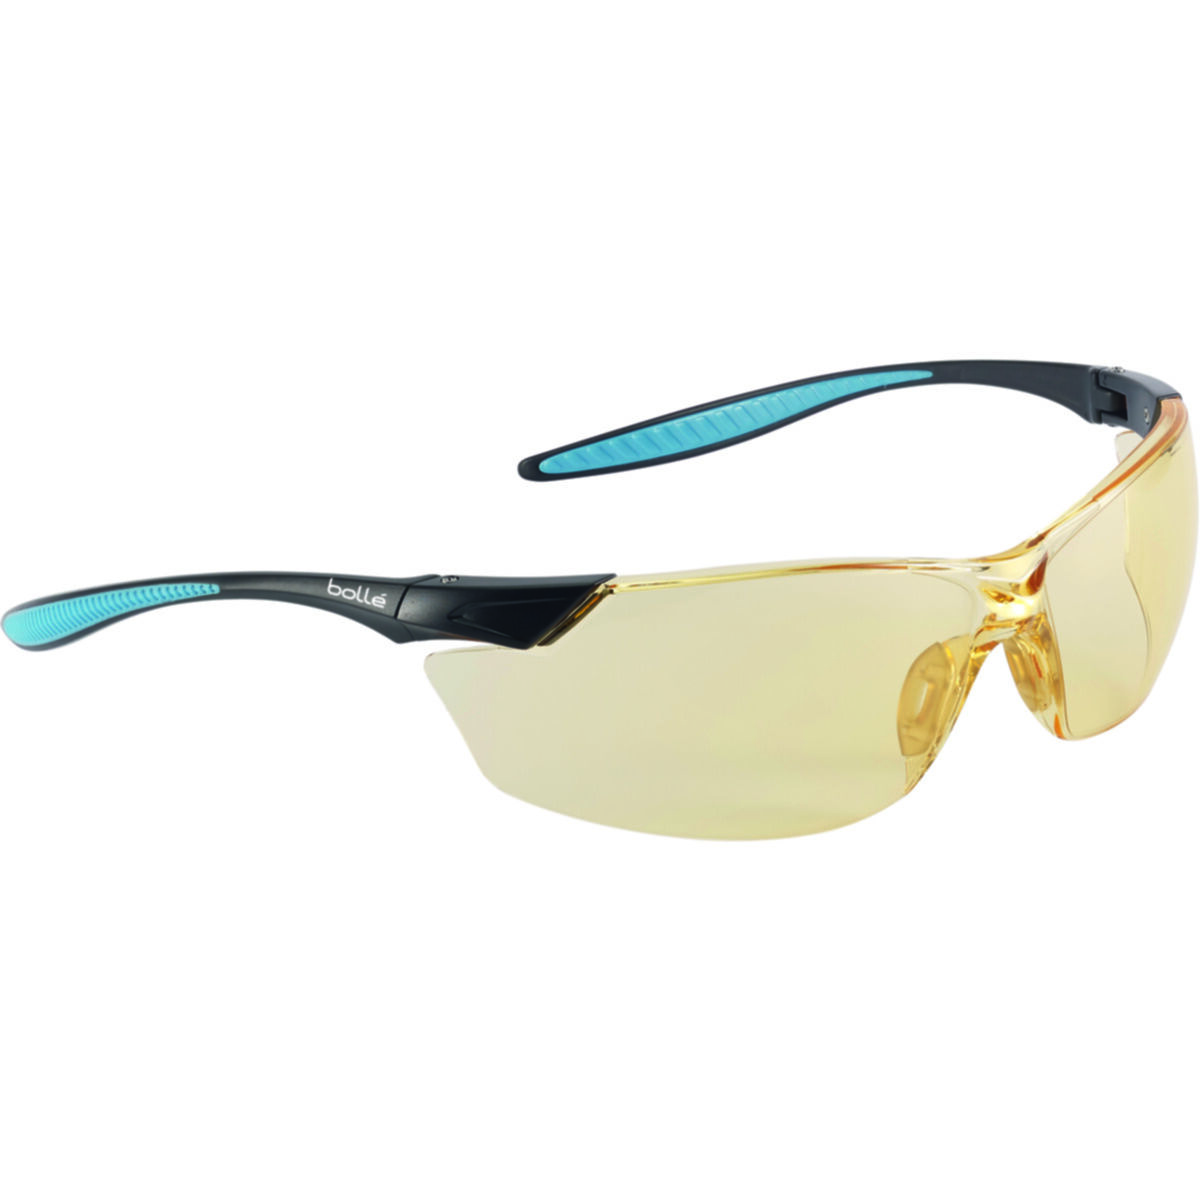 Bolle Viper Fahrrad Sicherheit Brille Brillen Brille & Neckcord Gelbe Linsen 